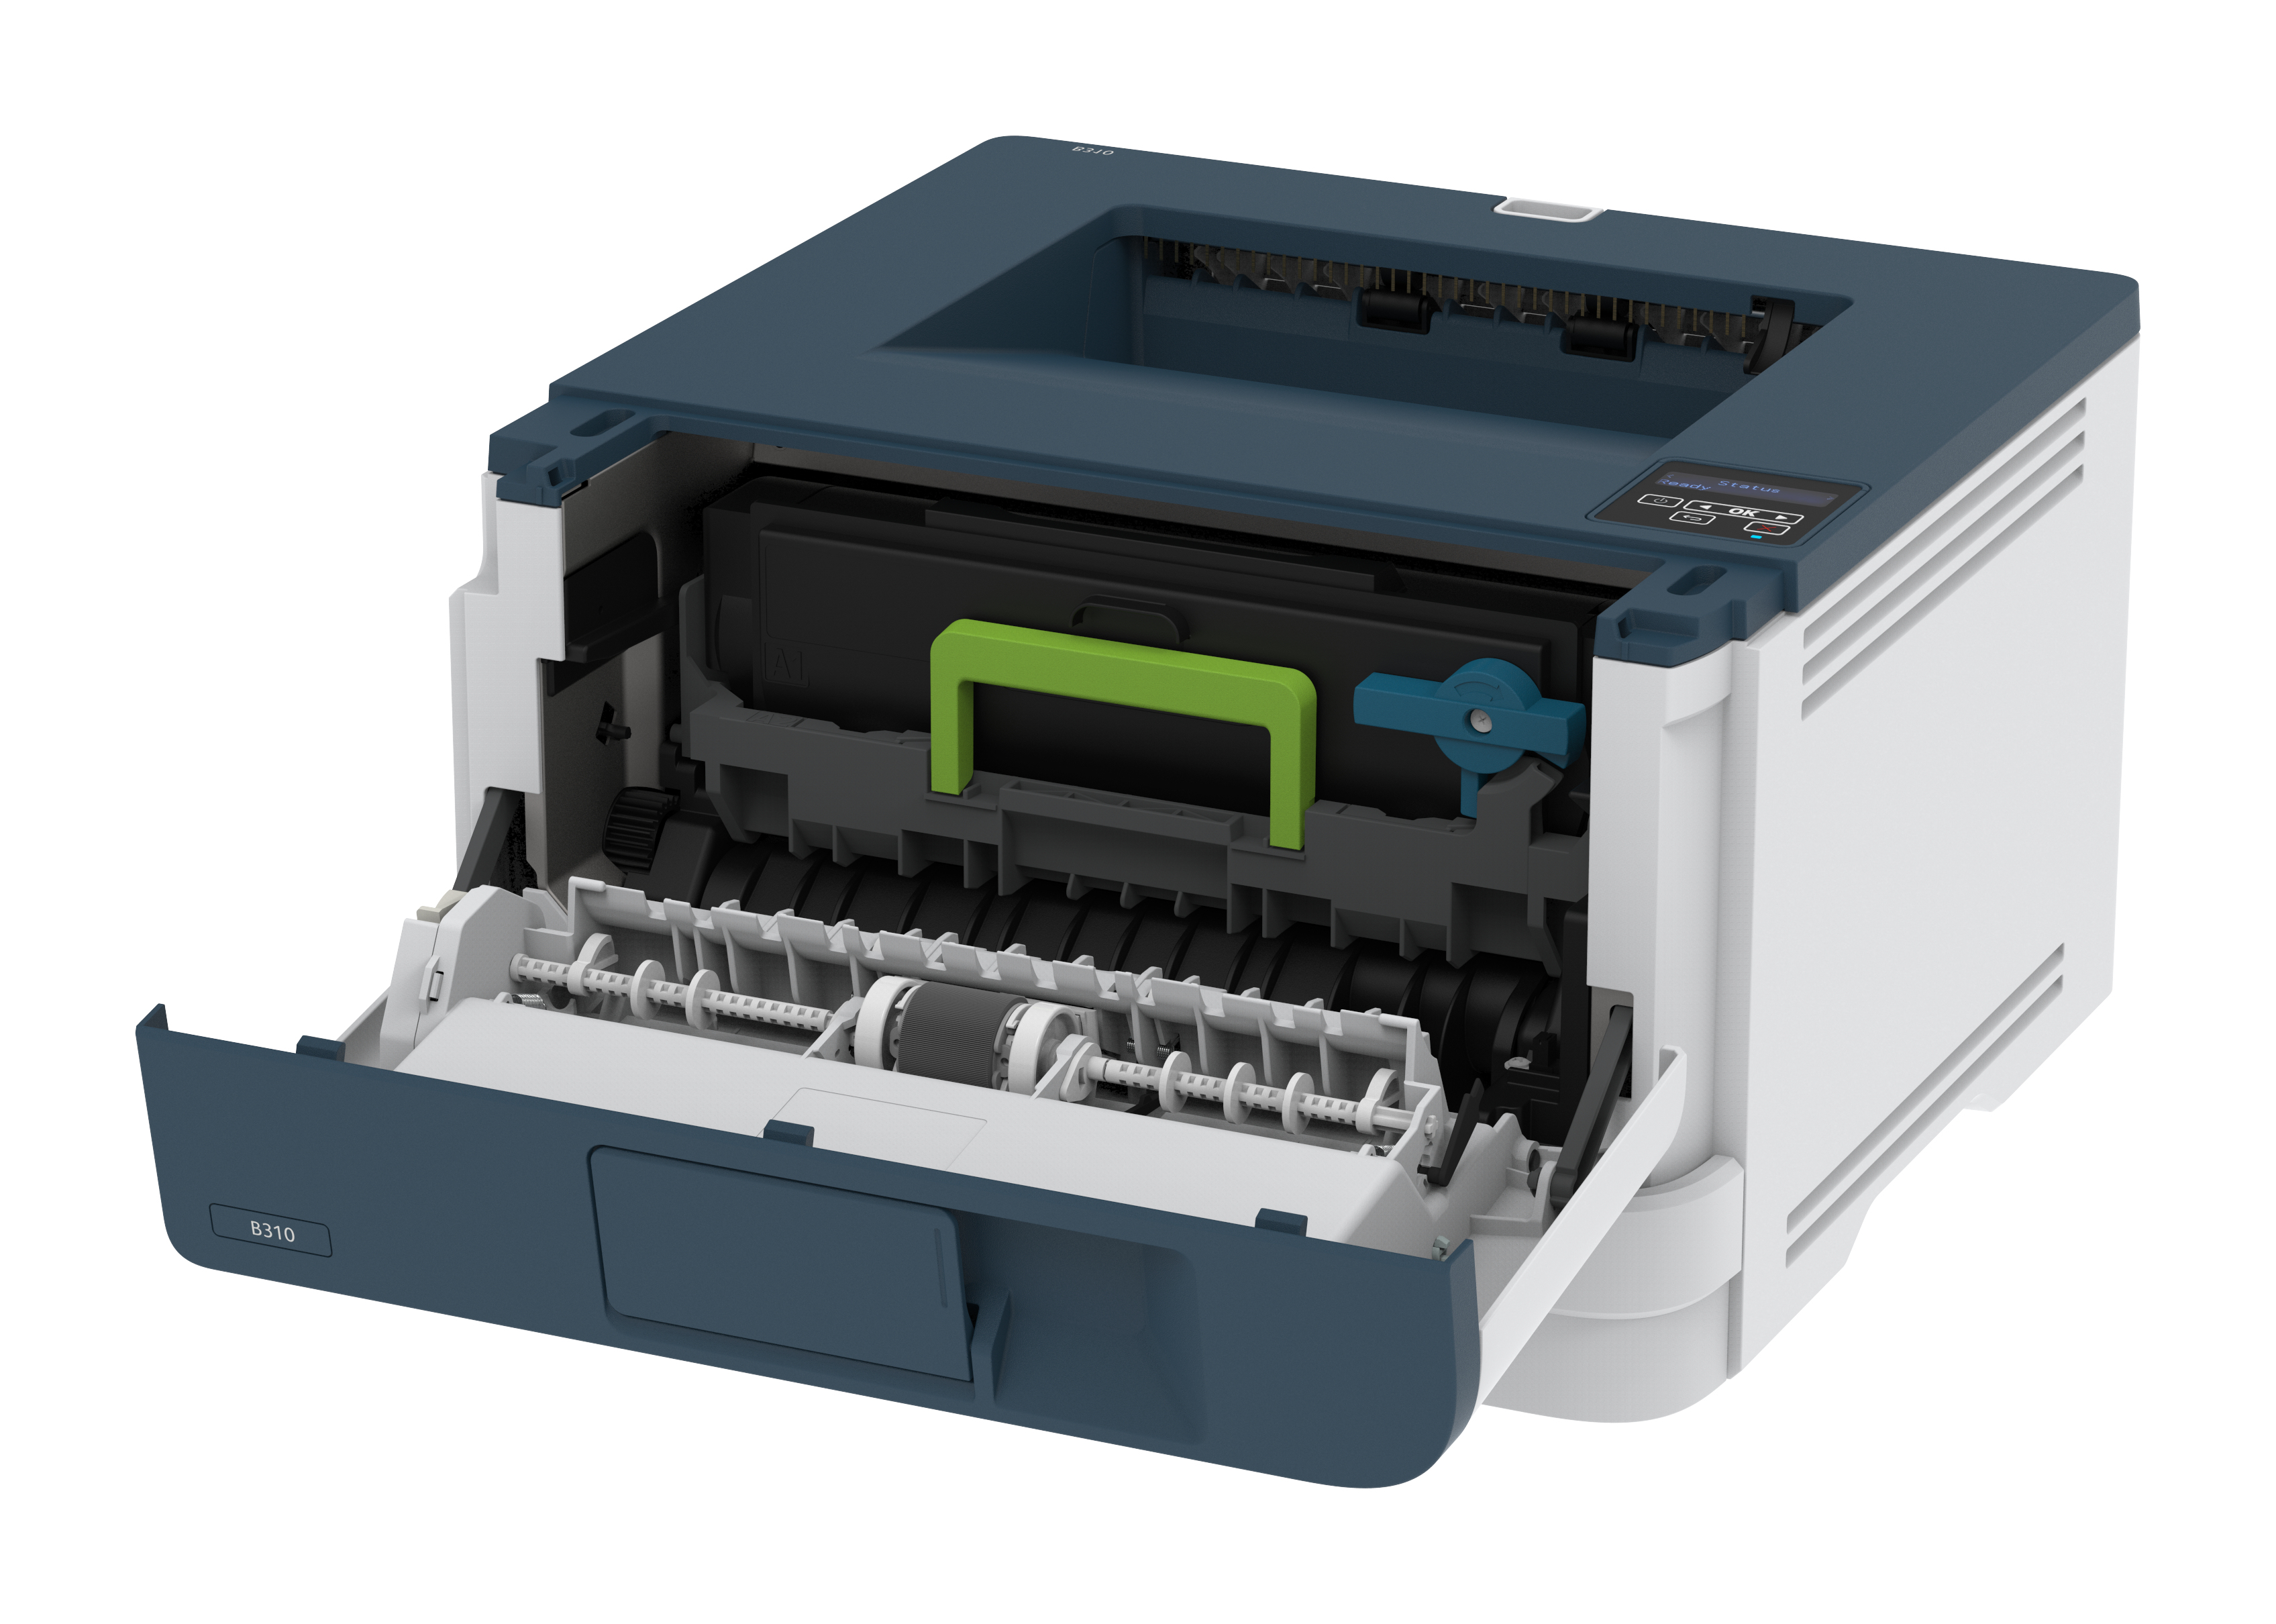 Imprimante recto verso A4 47 ppm Xerox B410, PS3 PCL5e/6, 2